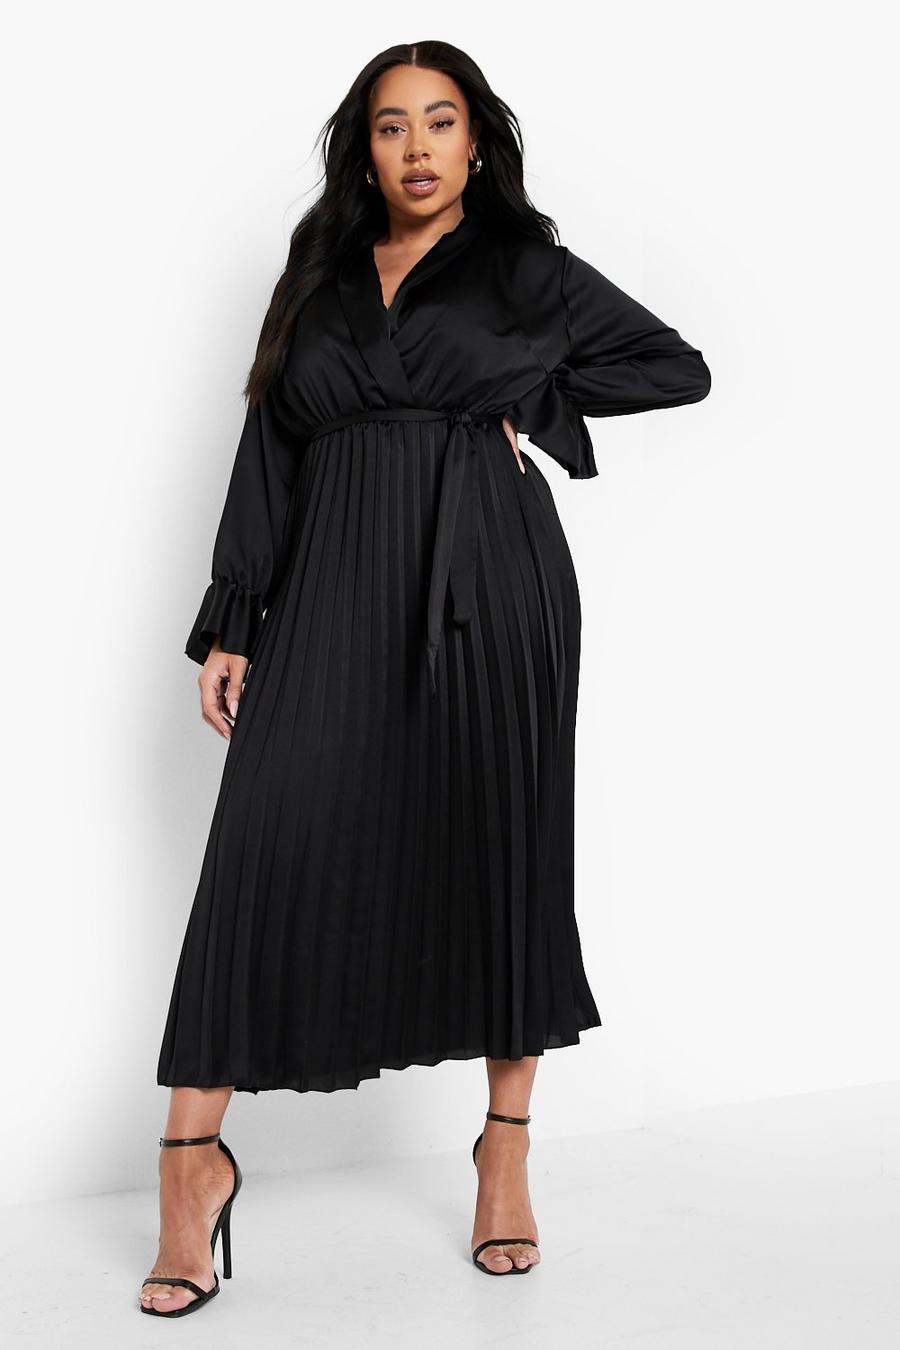 שחור nero שמלת מידקסי סאטן עם קפלים, מידות גדולות